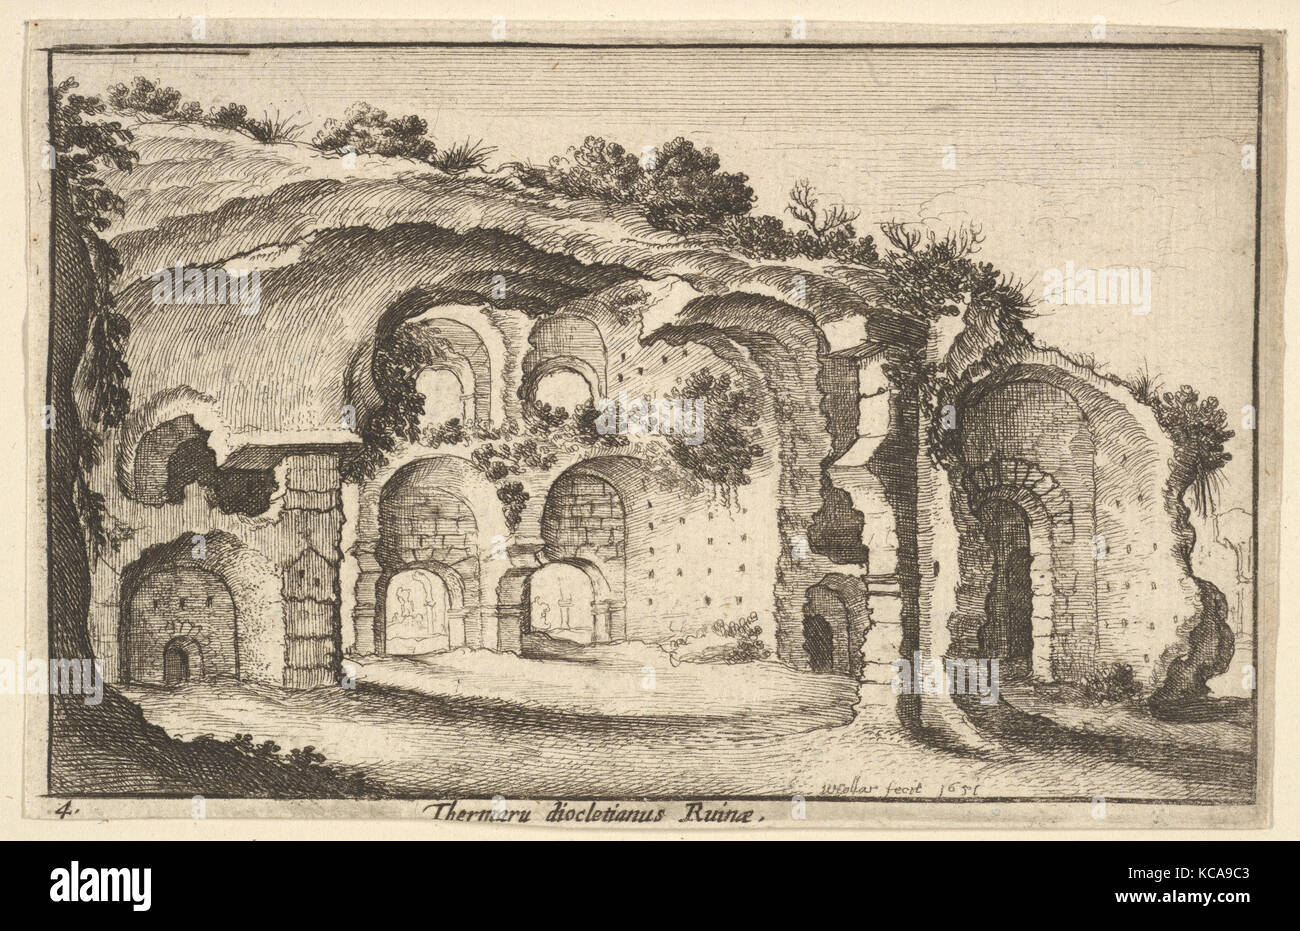 Thermaru diocletiani Ruinae (Terme di Diocleziano), dopo Sebastiaen Vrancx, 1651 Foto Stock